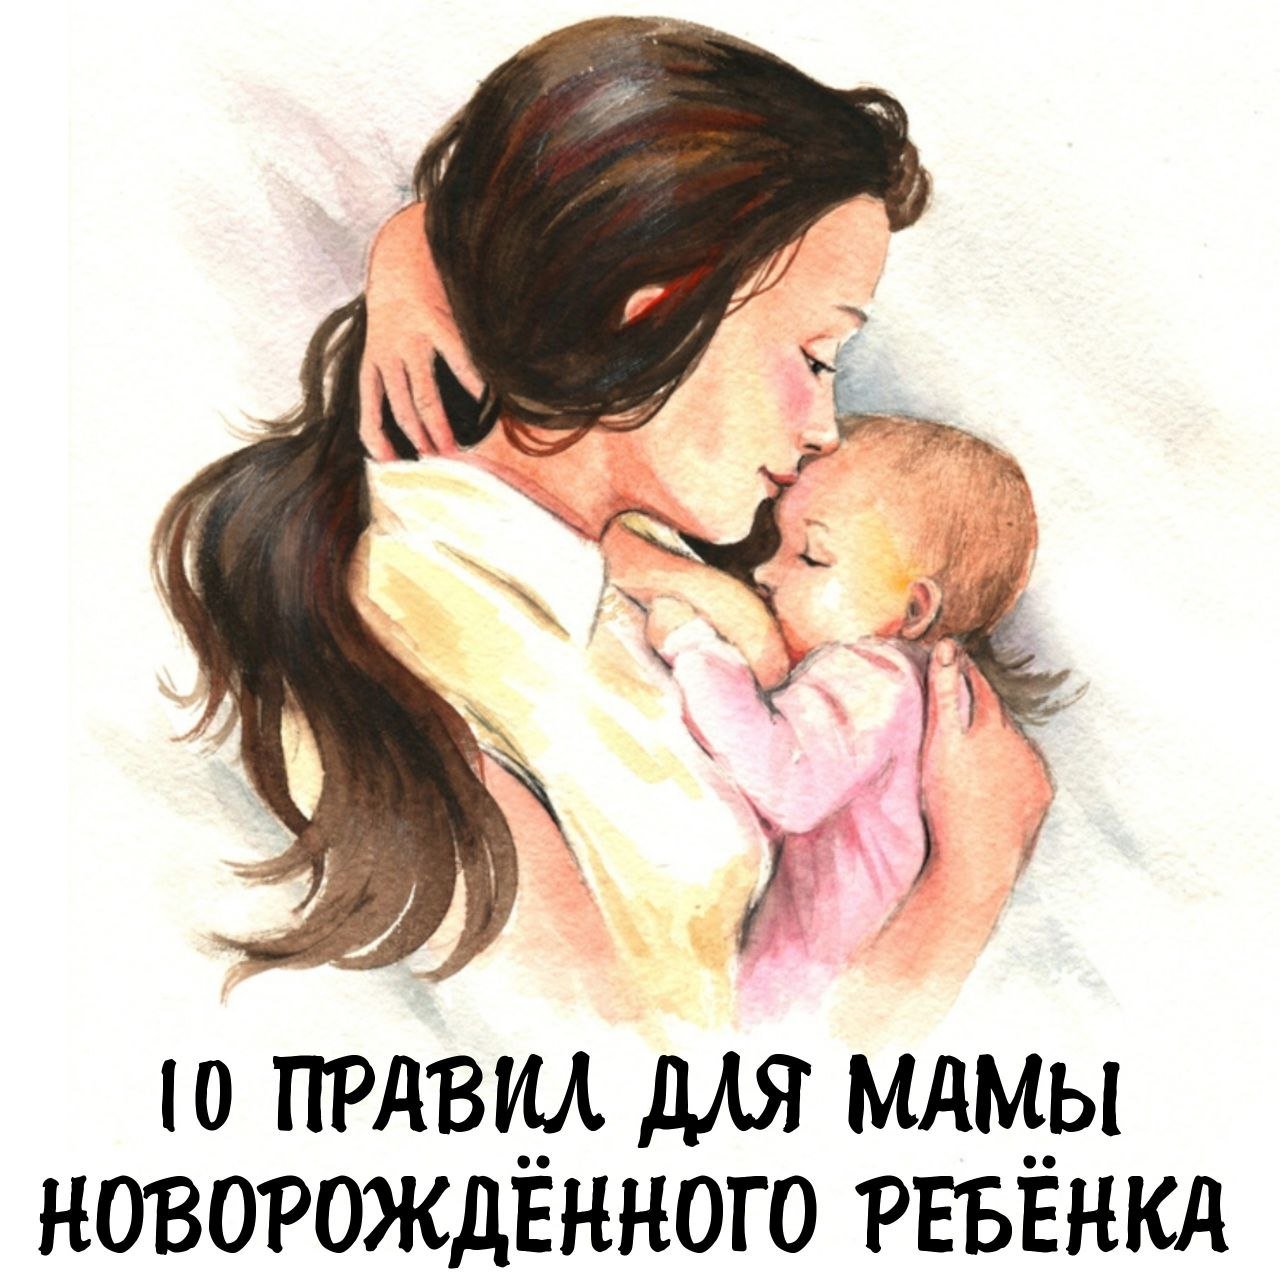 💗10 ПРАВИЛ ДЛЯ МАМЫ НОВОРОЖДЁННОГО РЕБЁНКА💗

1️⃣ Как только ваш малыш ... 